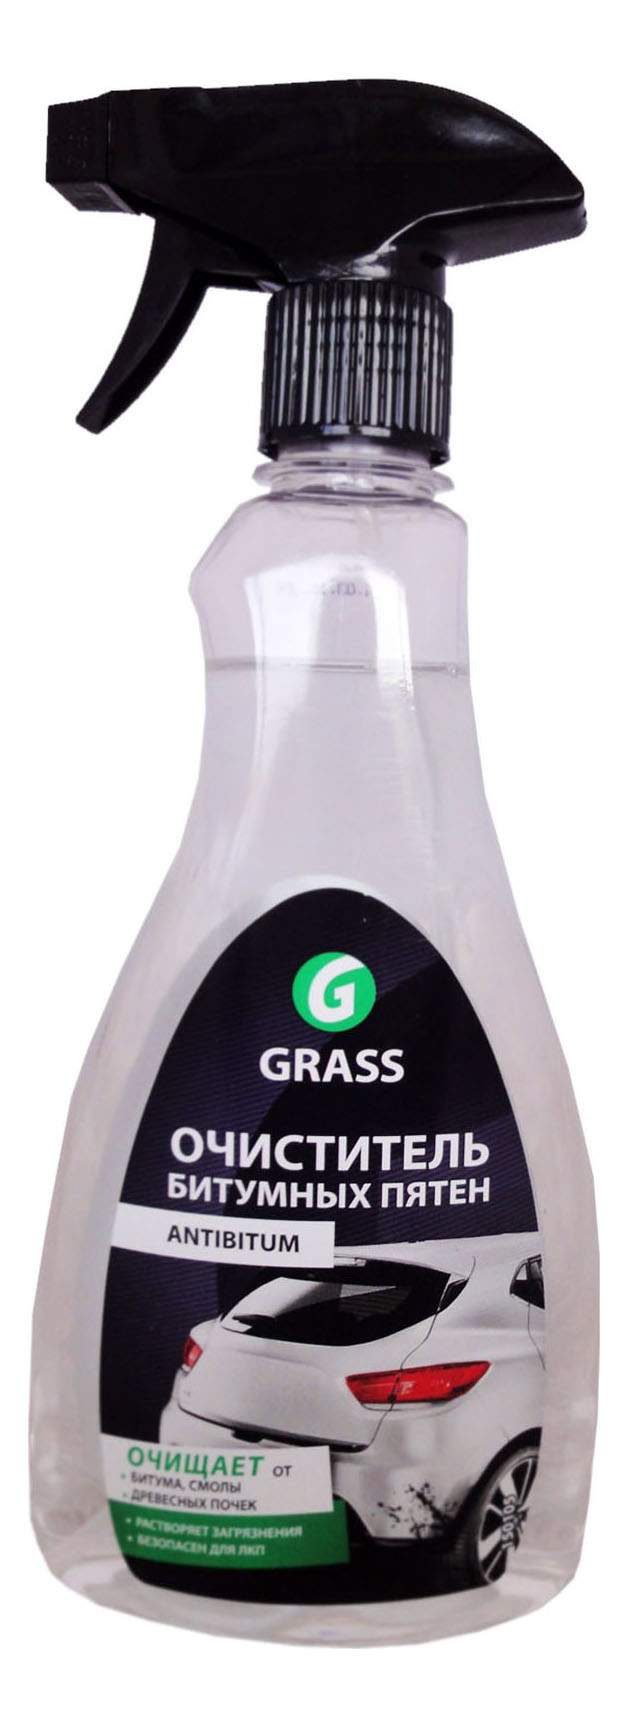 Очиститель битумных пятен GRASS Antibitum (0,5л)